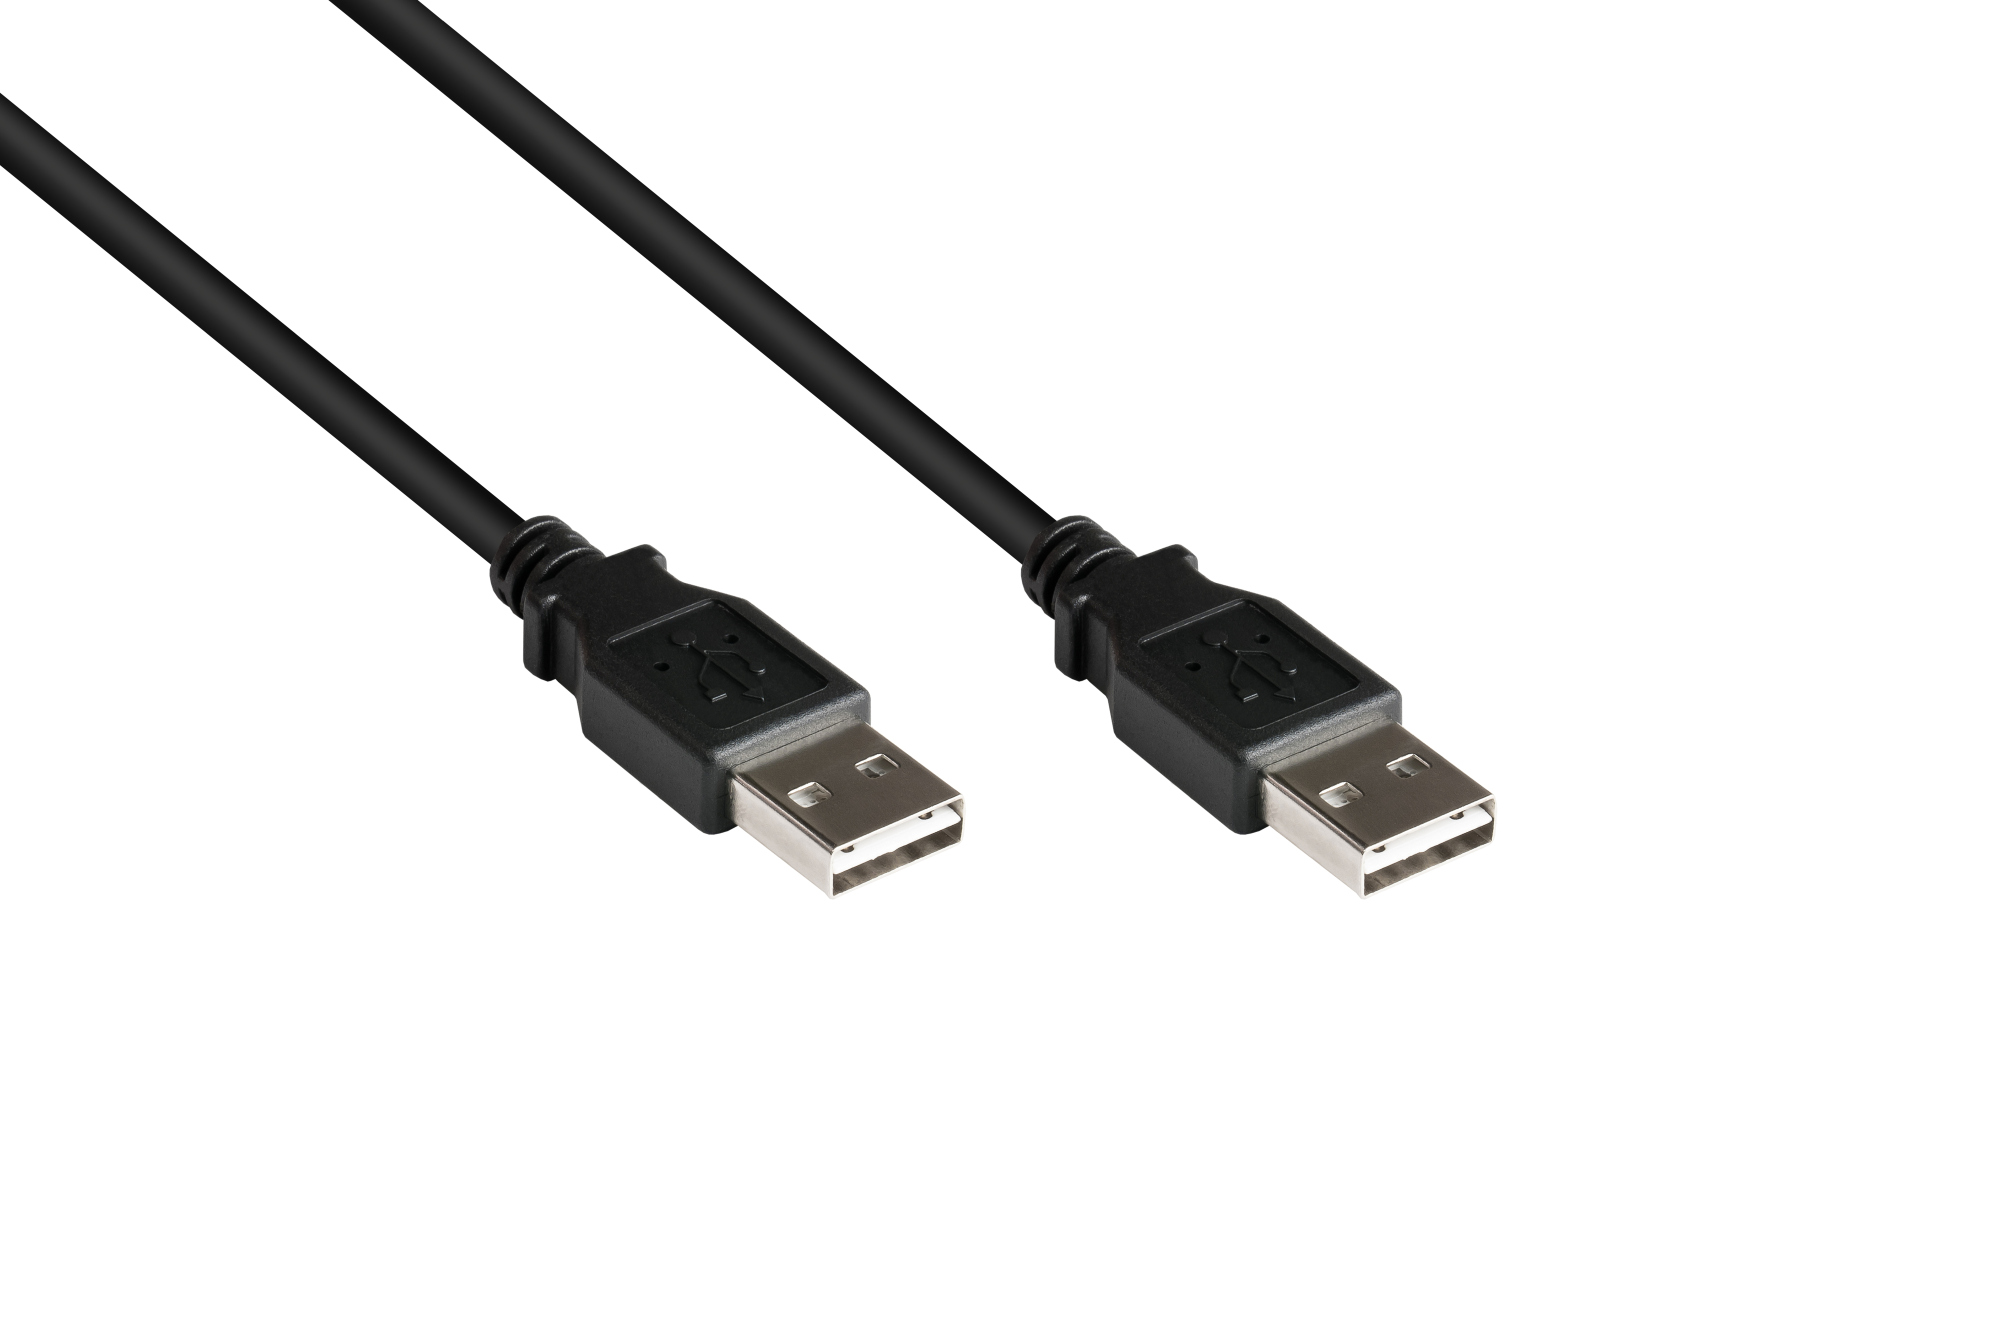 Anschlusskabel USB 2.0 High-Speed EASY A Stecker an EASY A Stecker, schwarz, 1m